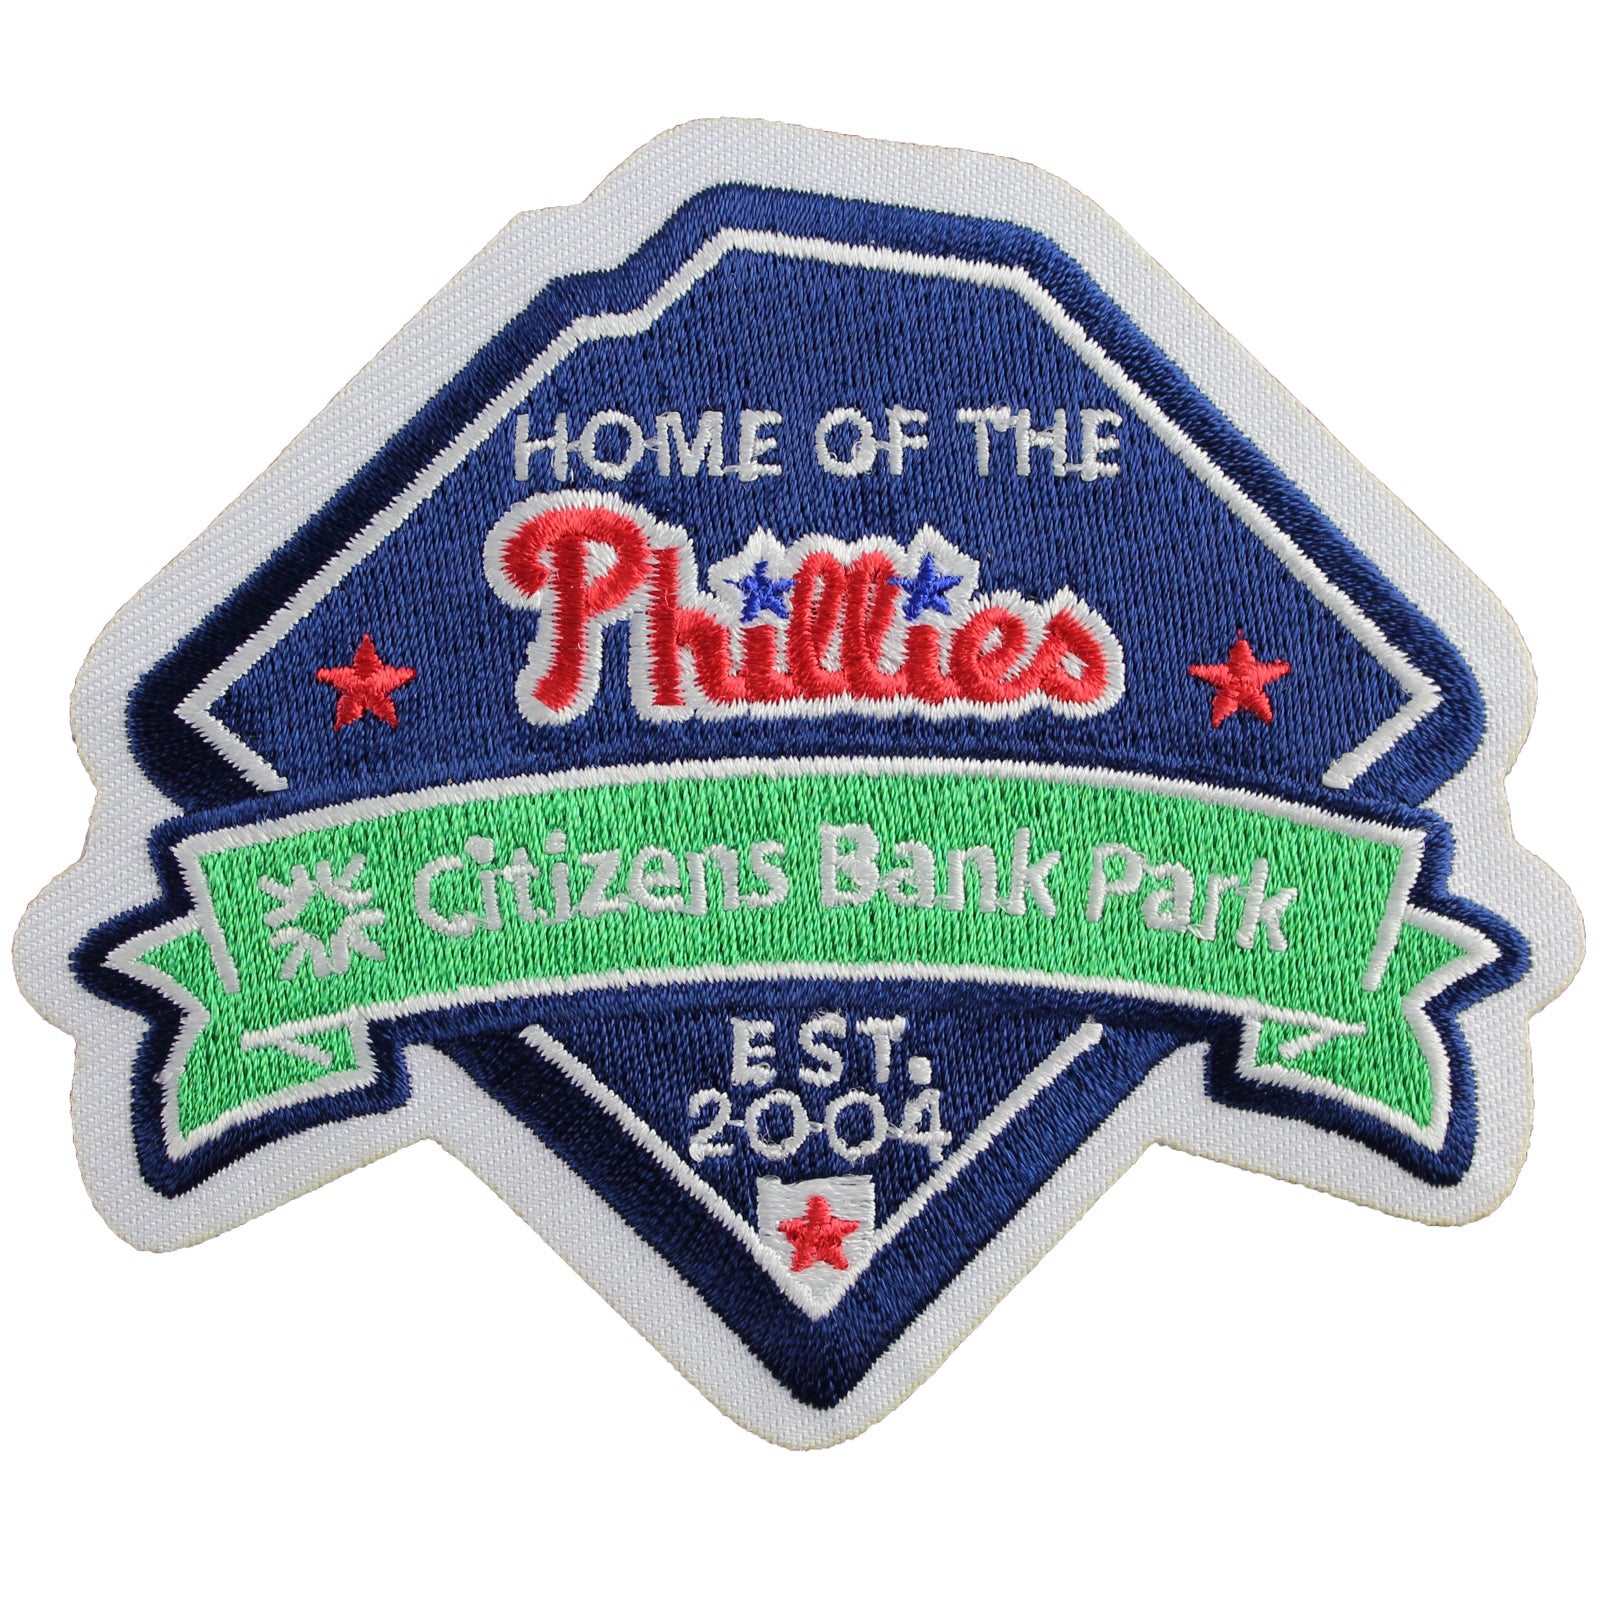 Philadelphia Phillies Citizens Bank Park Patch 